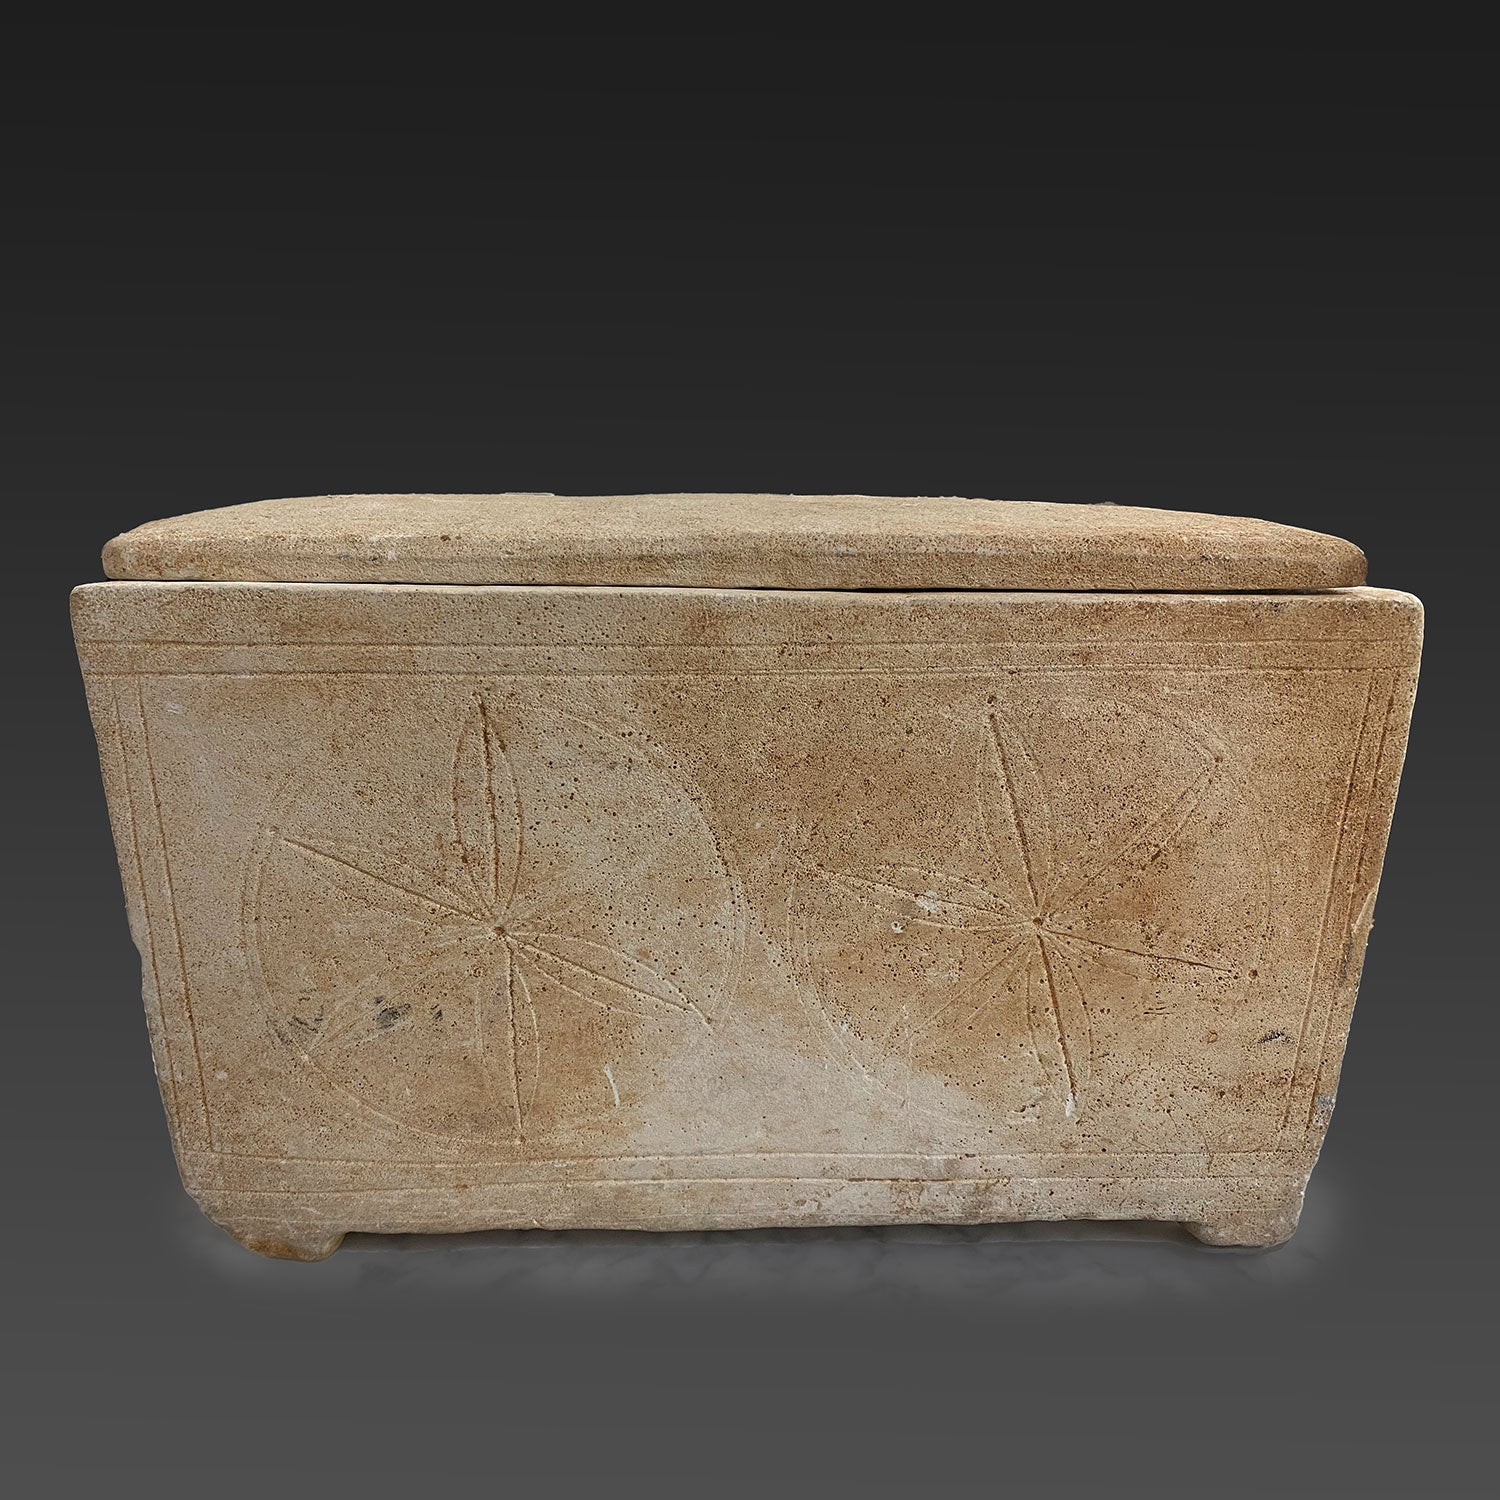 Ein frühes jüdisches Beinhaus aus Kalkstein mit Deckel, ca. 1. Jahrhundert v. Chr. – 1. Jahrhundert n. Chr